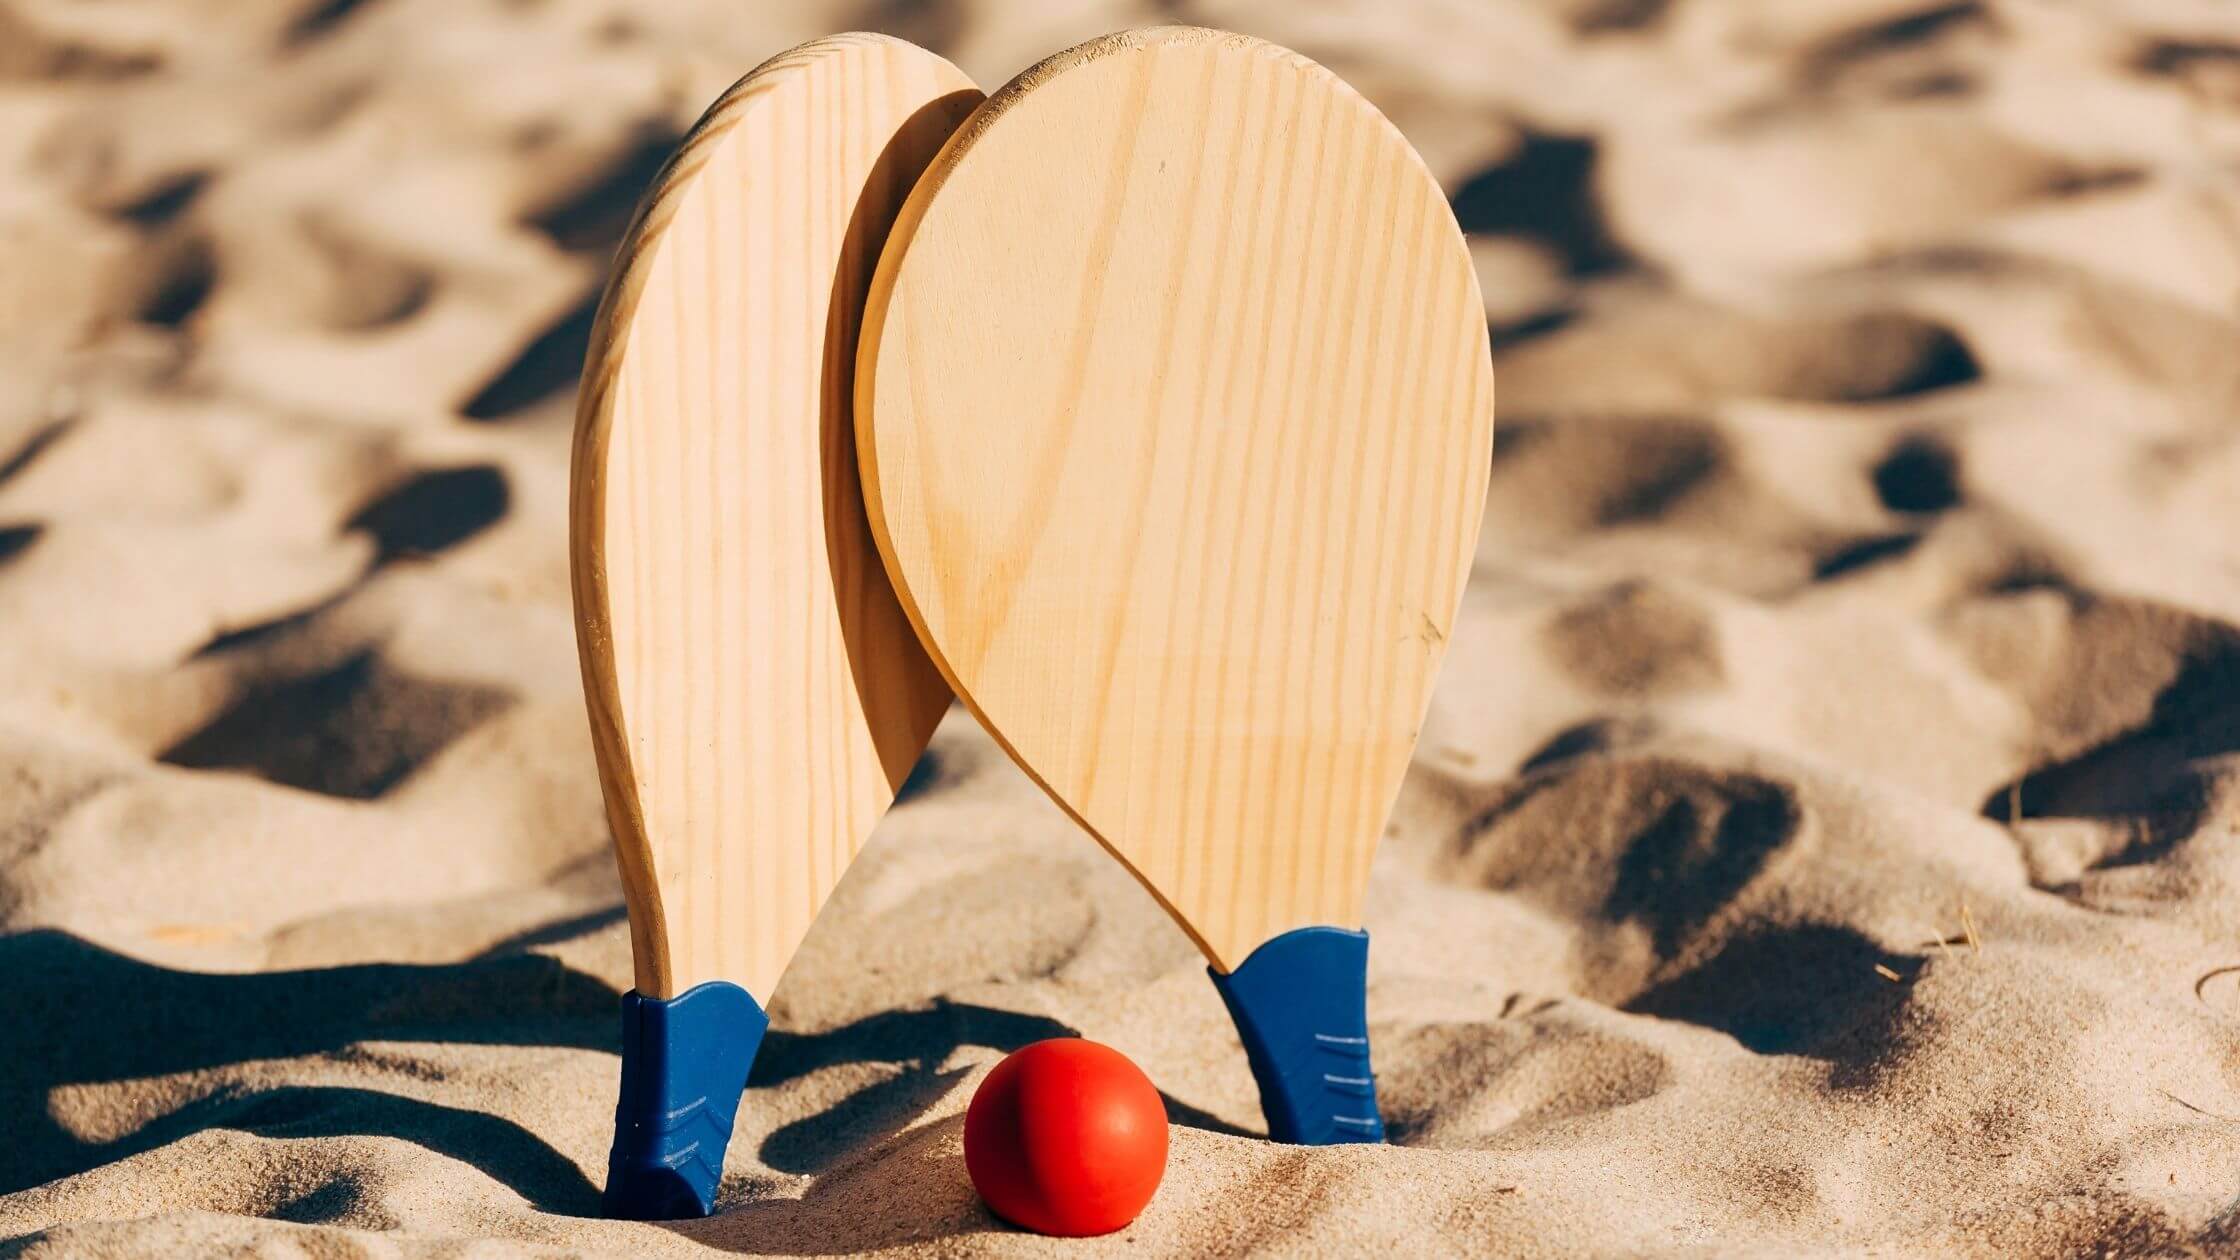 5 ótimas razões para praticar beach tennis